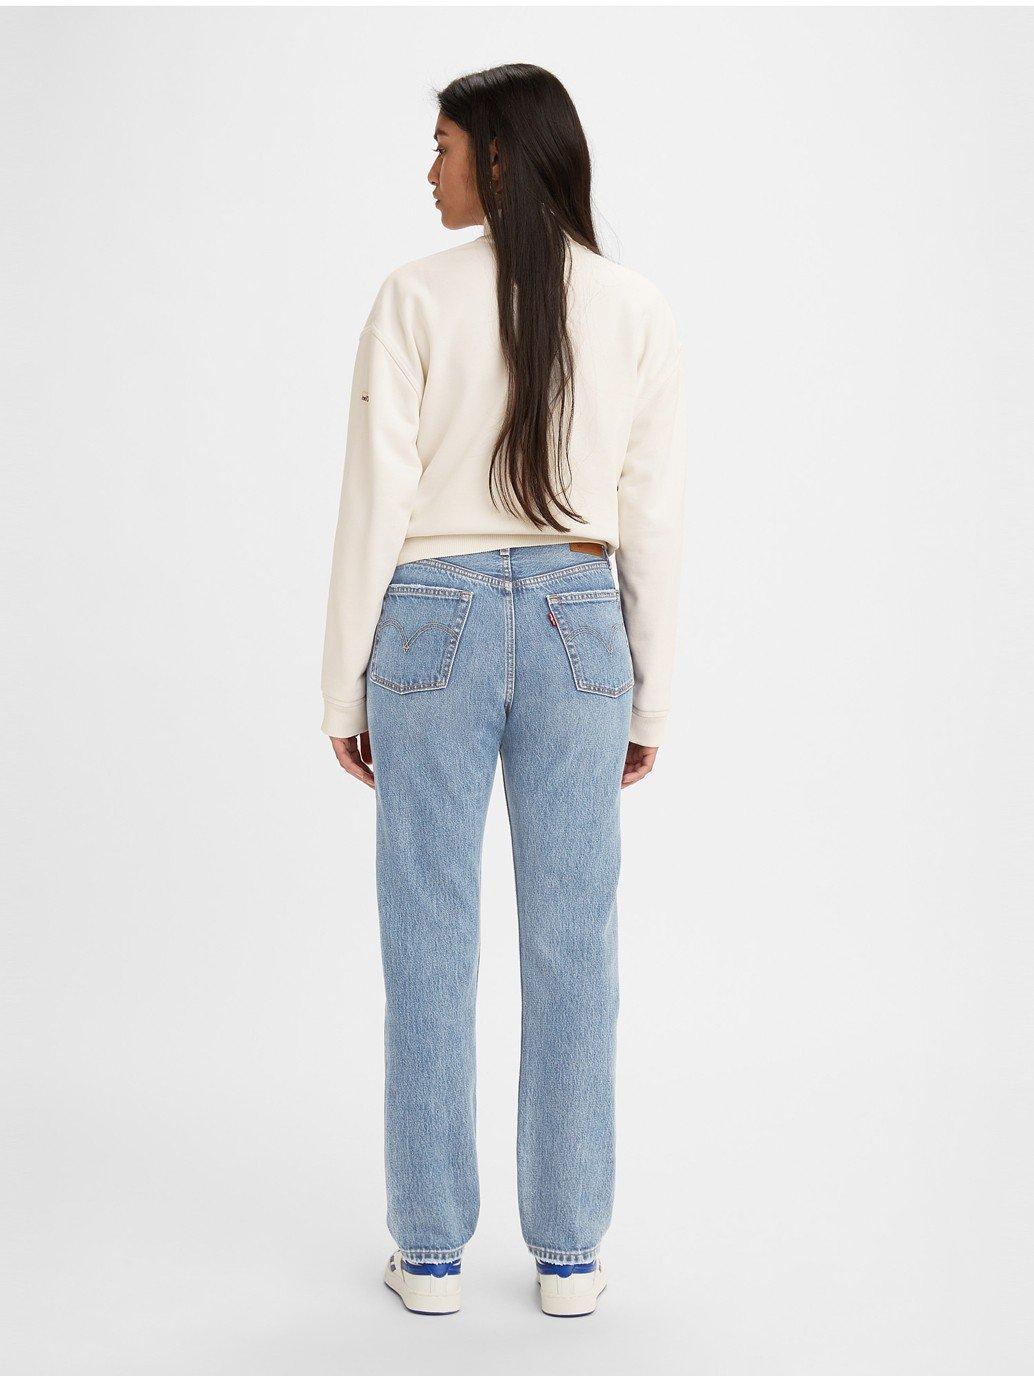 Buy Levi's Women's 501® Original Fit Jeans | Levi's® Official Online Store  SG